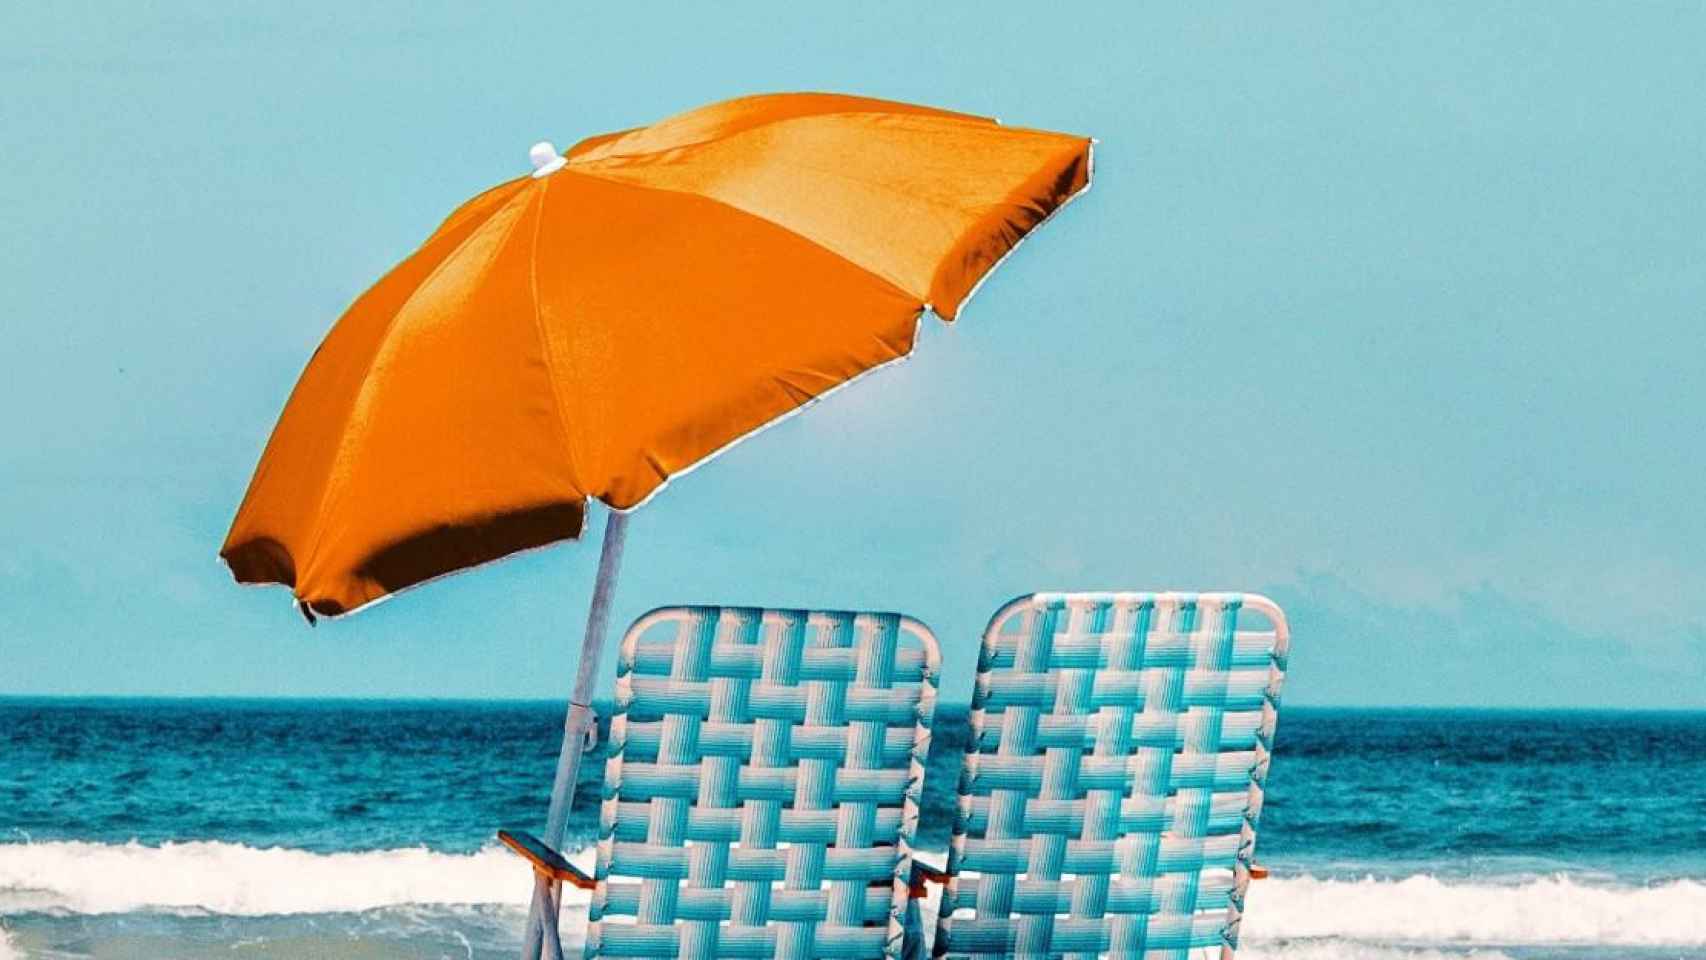 10 Consejos para comprar sombrillas y parasoles